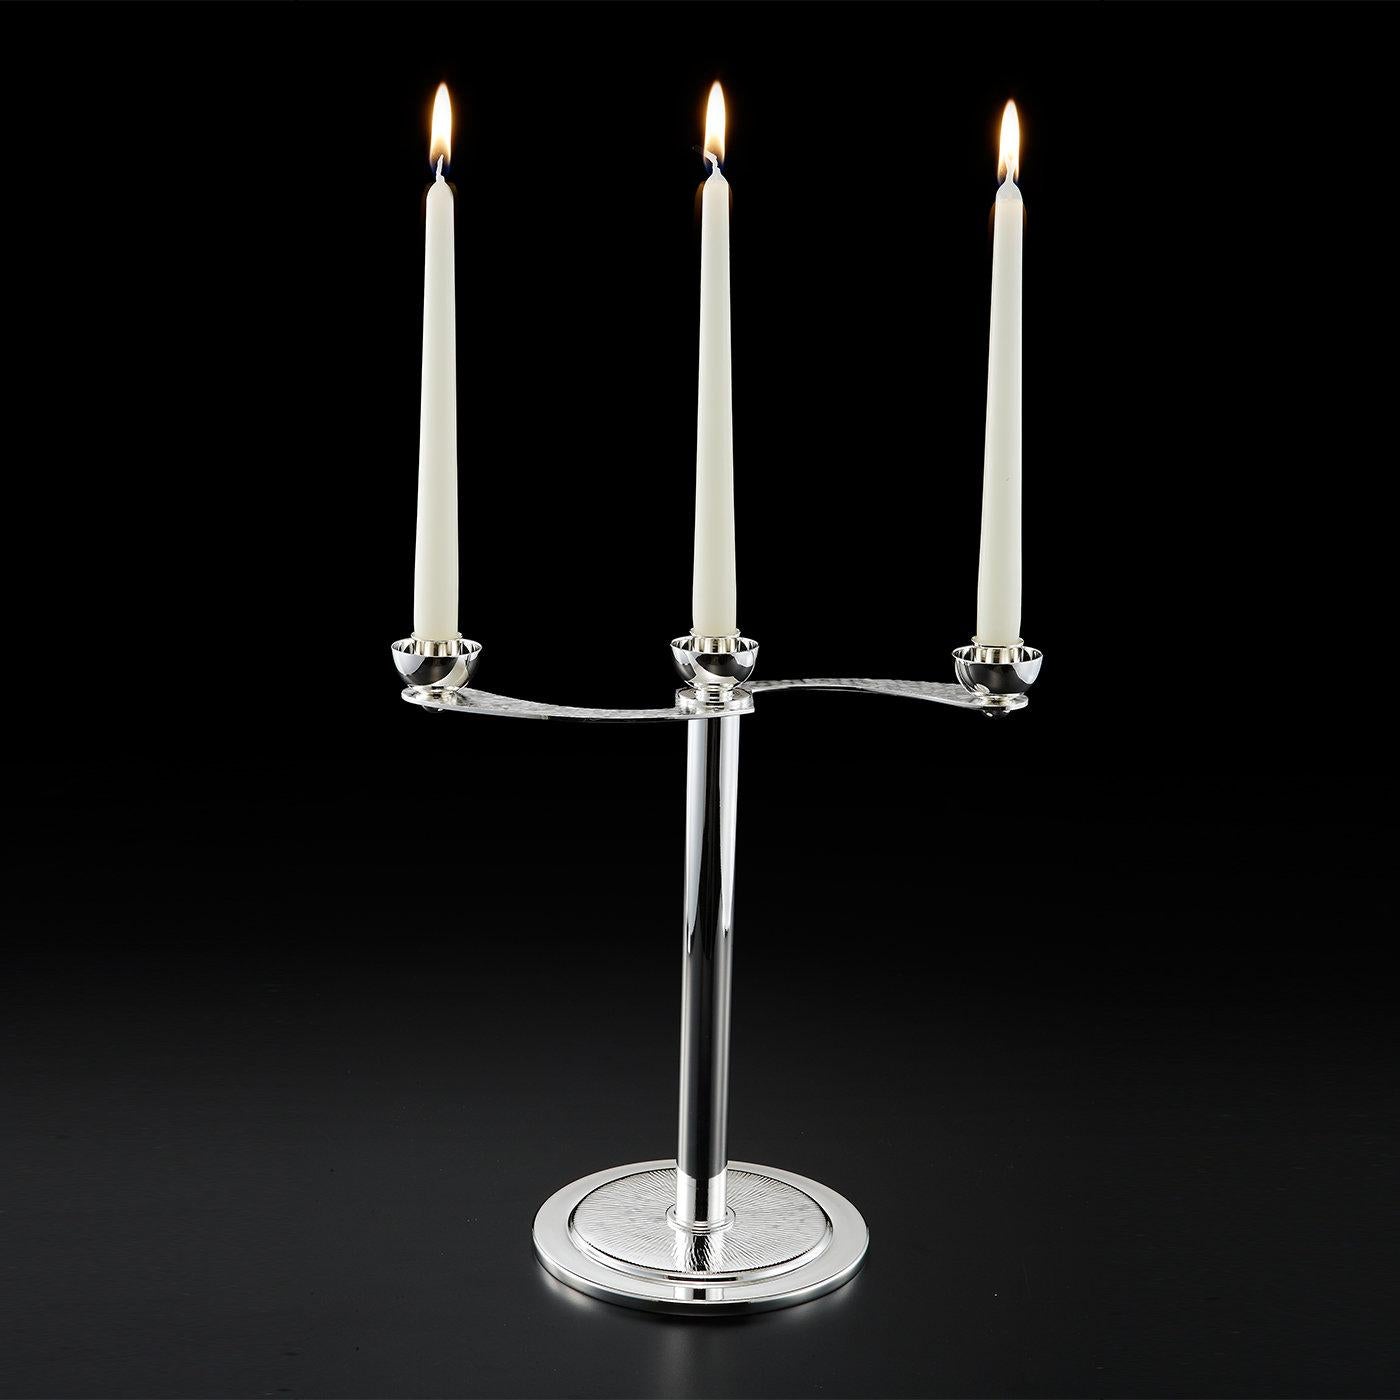 Ce magnifique candélabre peut contenir trois bougies et est élégamment construit en alliage argenté. Le candélabre peut être séparé en deux parties, la partie supérieure accueillant les bougies et la base devenant un vase. Les bras du candélabre